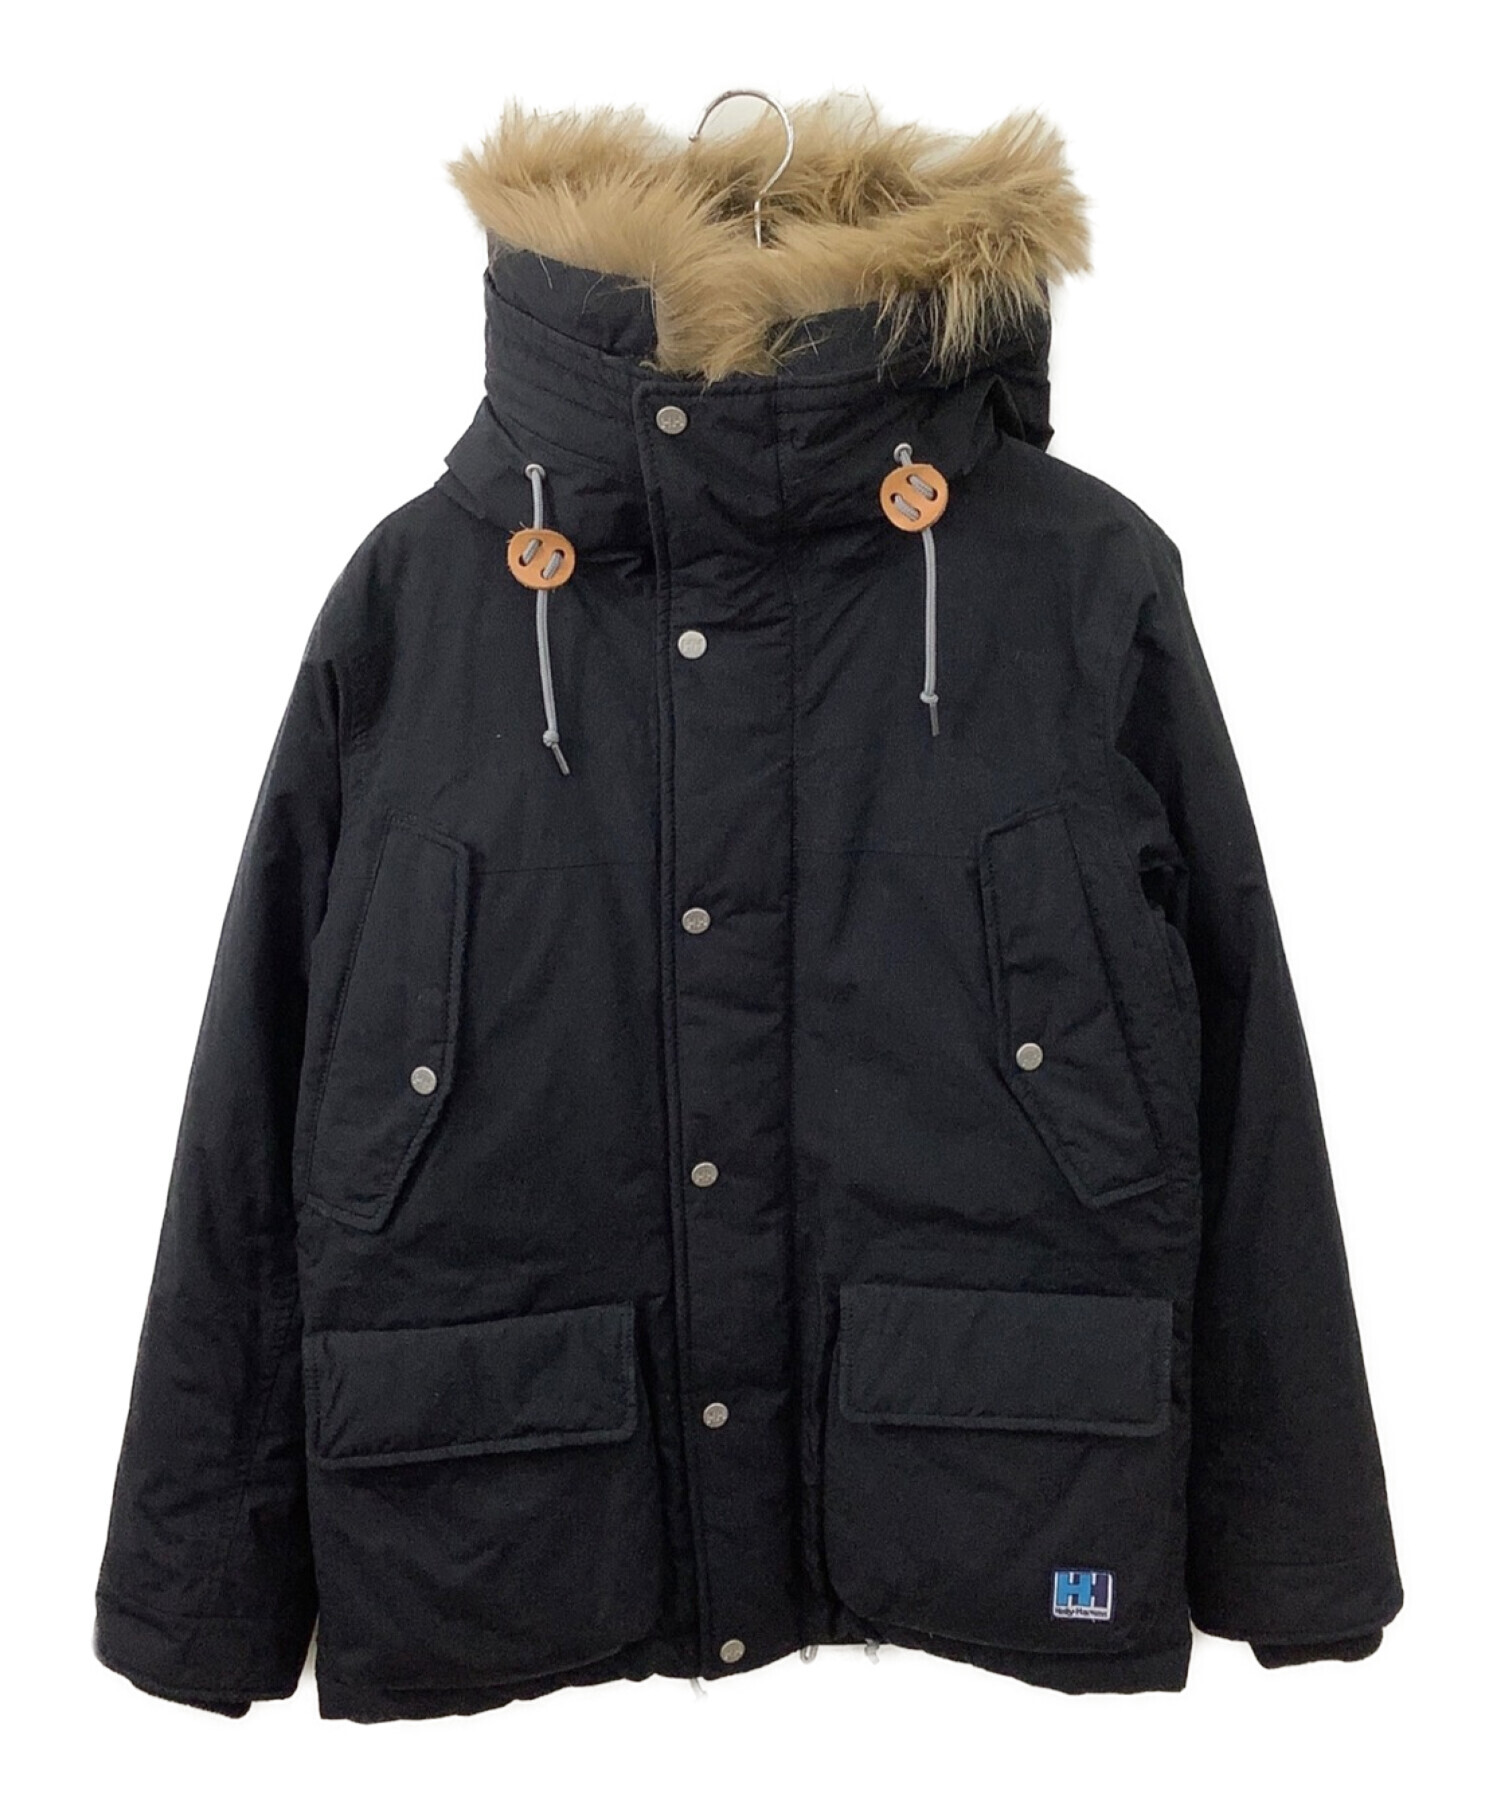 HELLY HANSEN (ヘリーハンセン) アルマークインサレーションジャケット ブラック サイズ:M